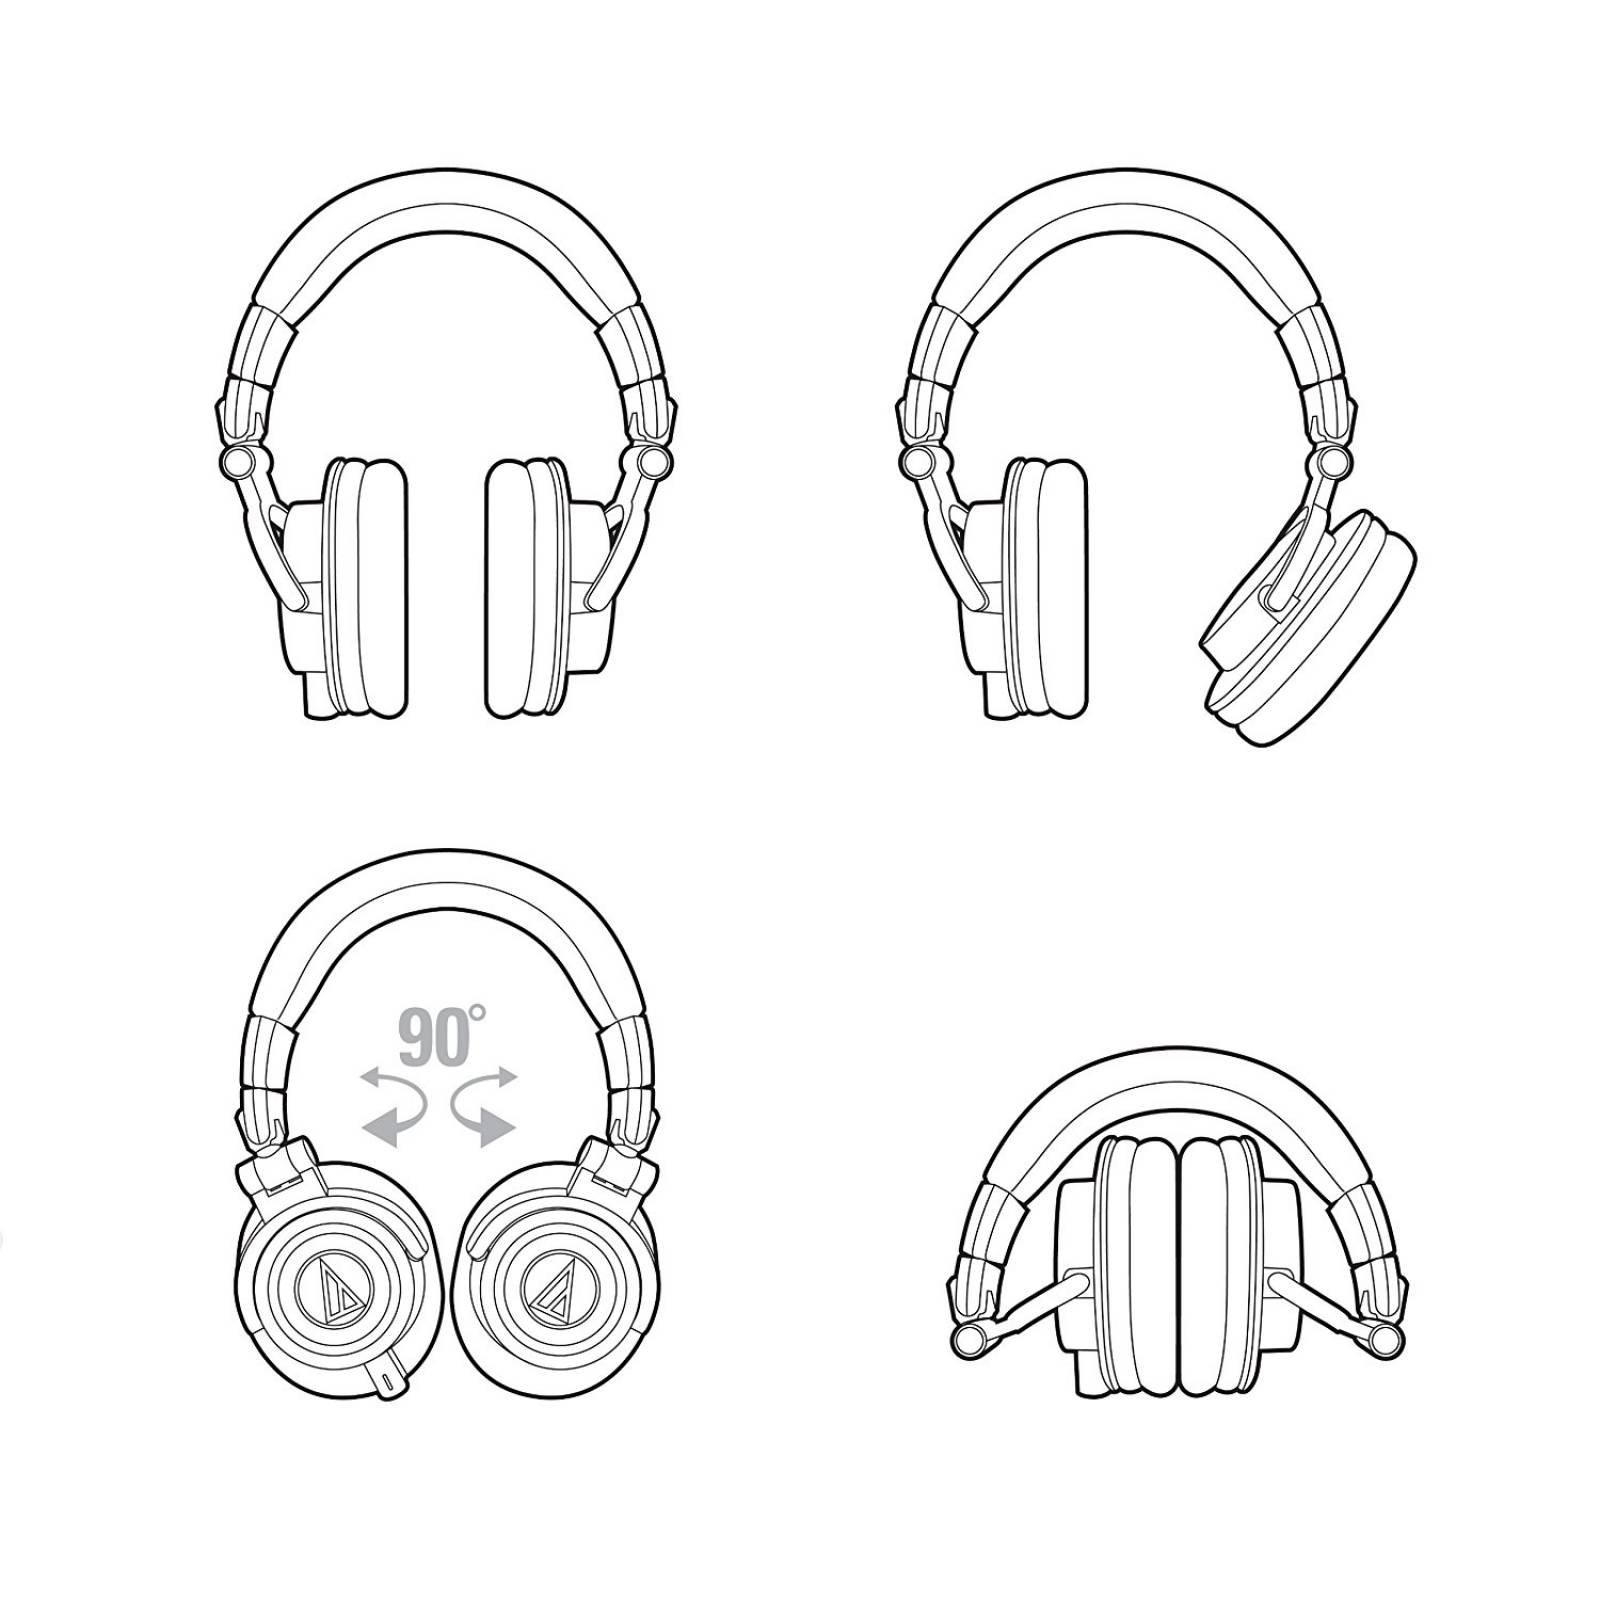 B:Audio-Technica ATH-M50x auriculares Monitor estudio profesio